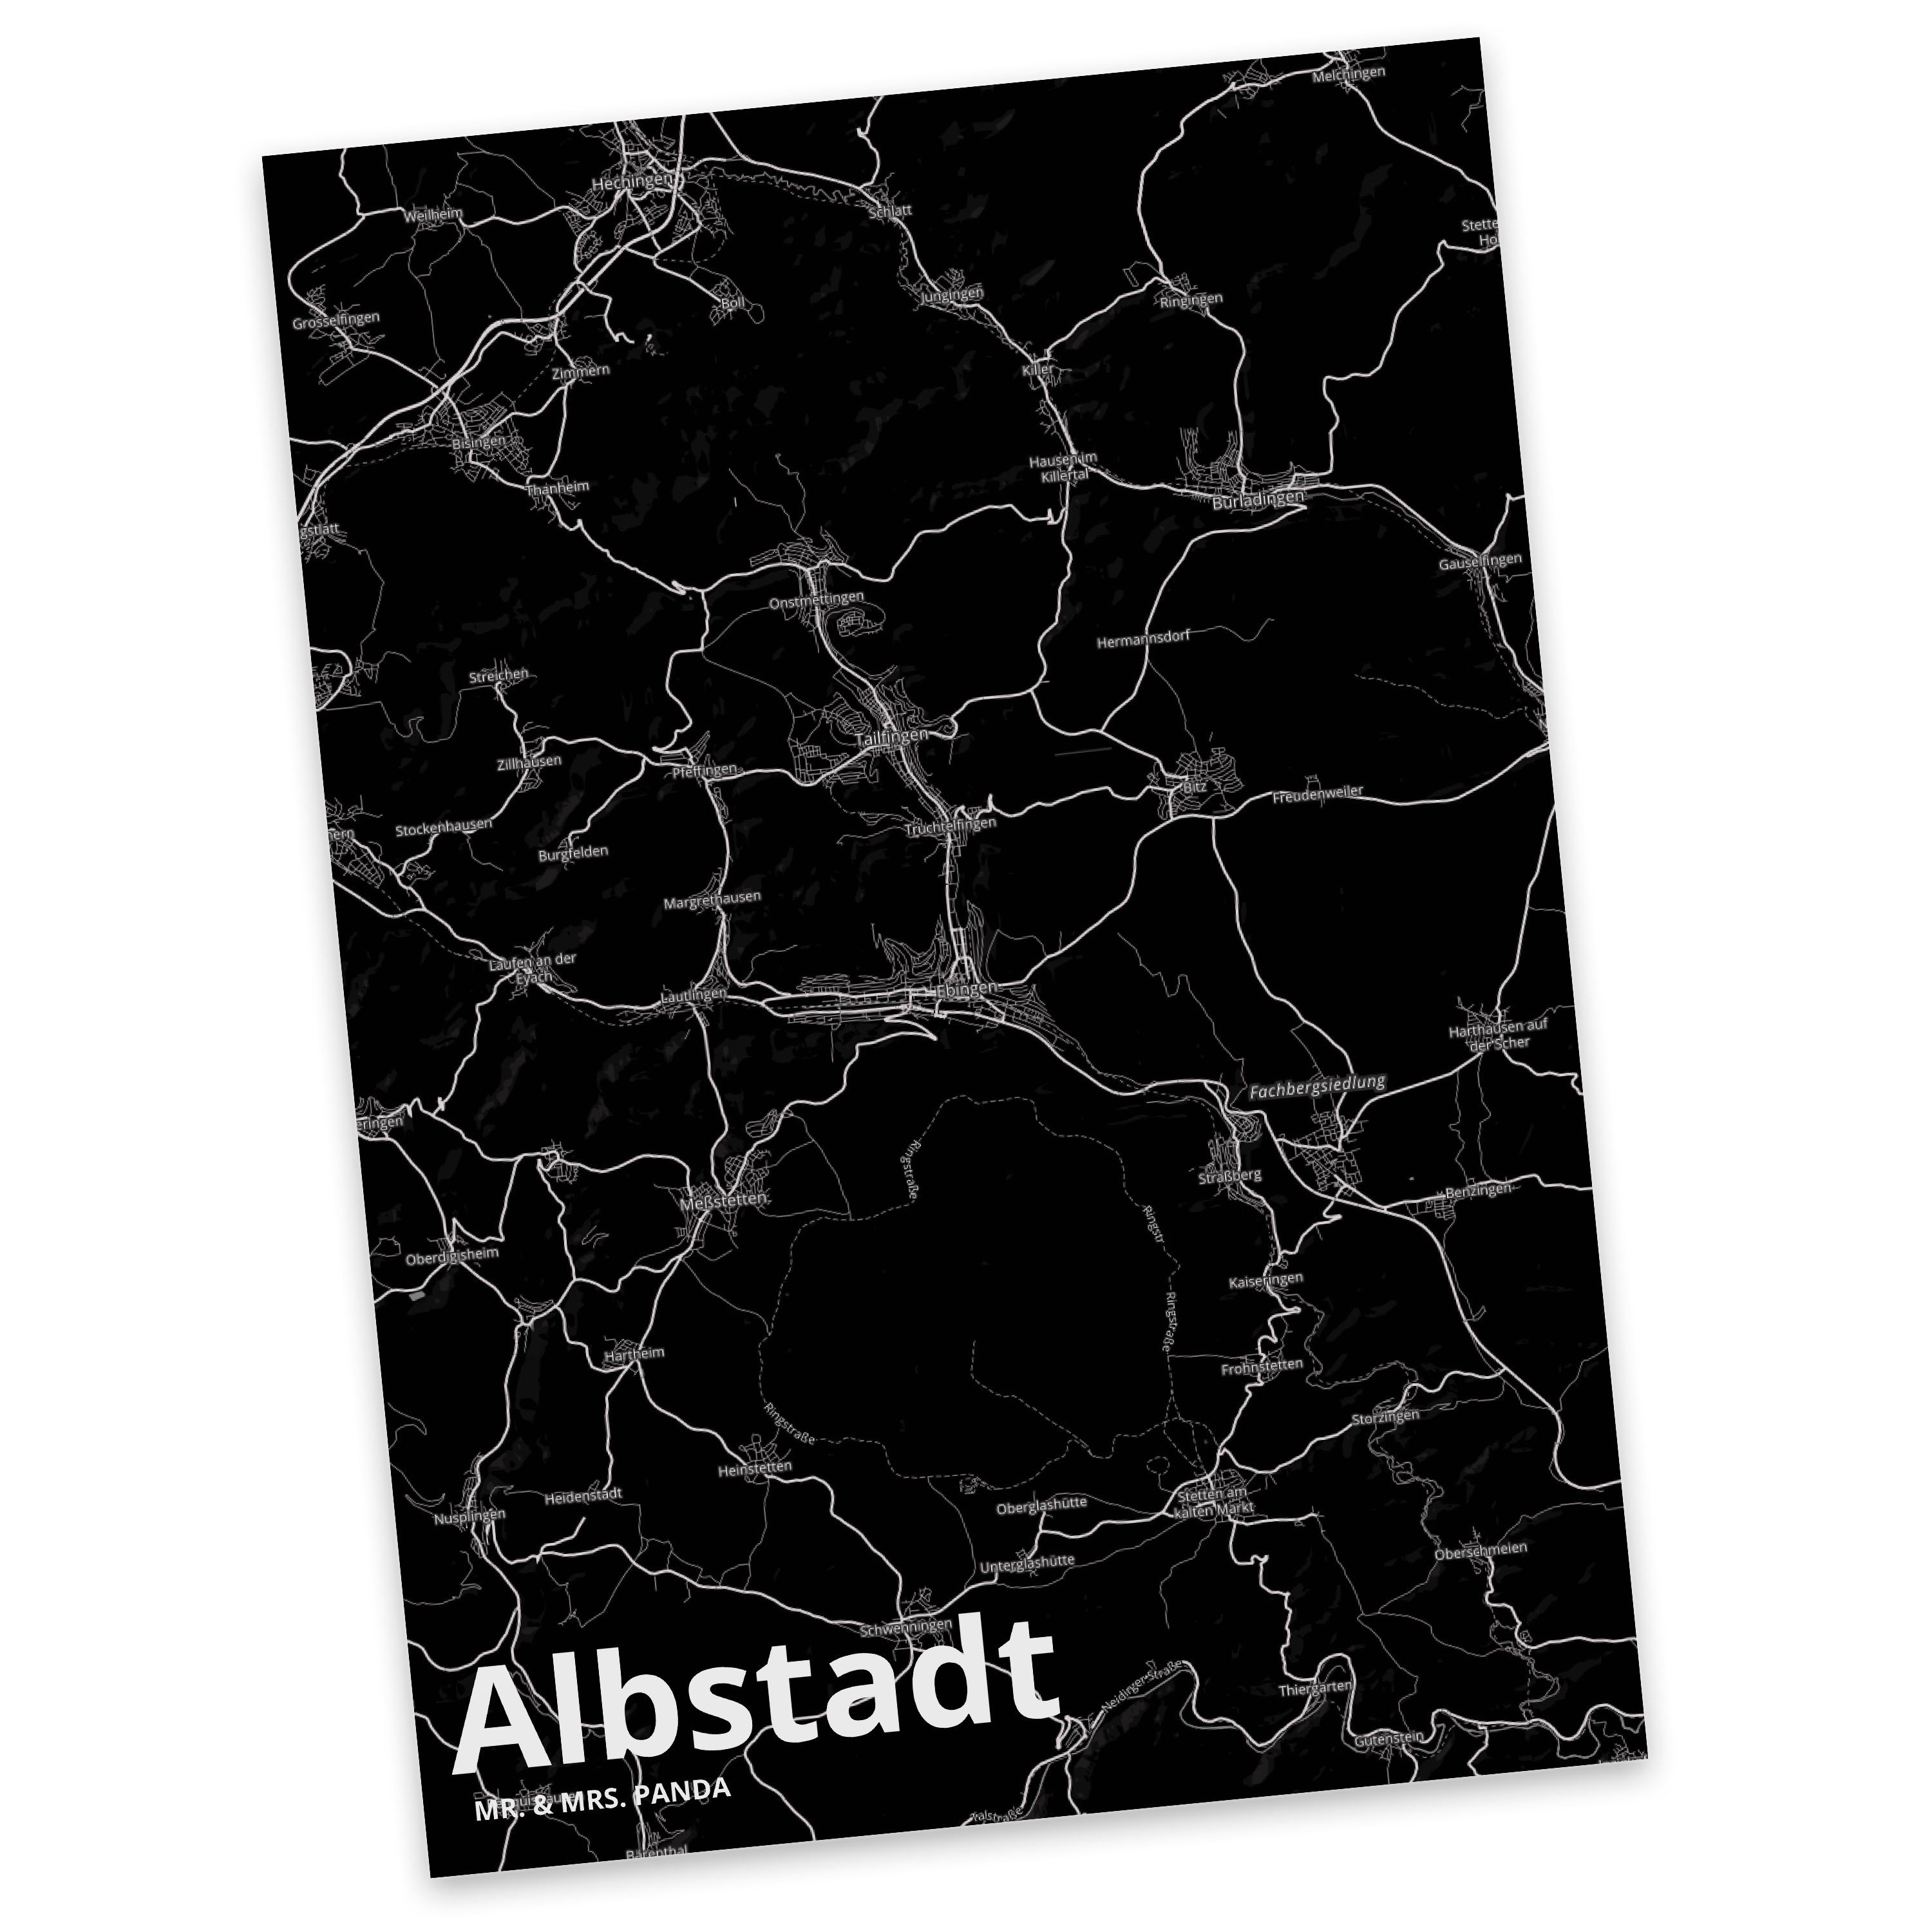 Mr. & Mrs. Panda Postkarte Albstadt - Geschenk, Dorf, Stadt Dorf Karte Landkarte Map Stadtplan